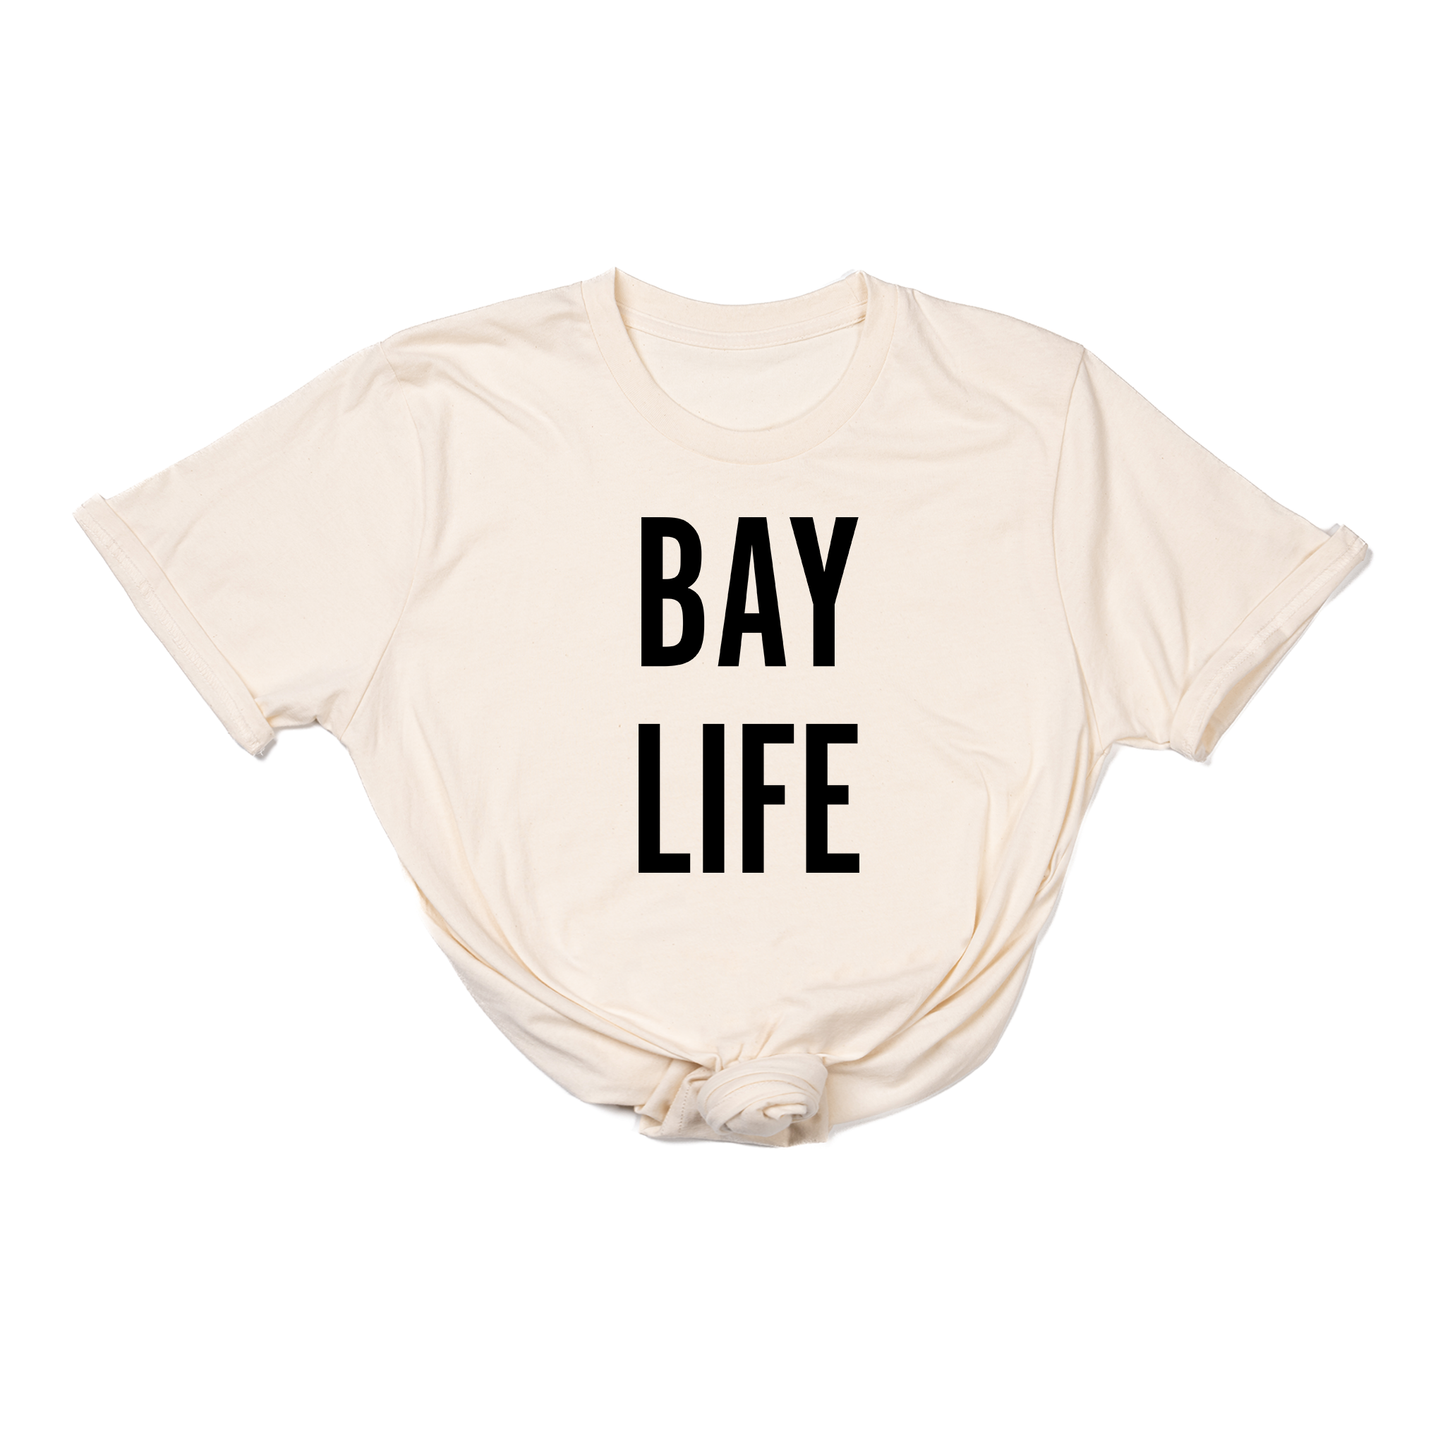 Bay Life (Black) - Tee (Natural)